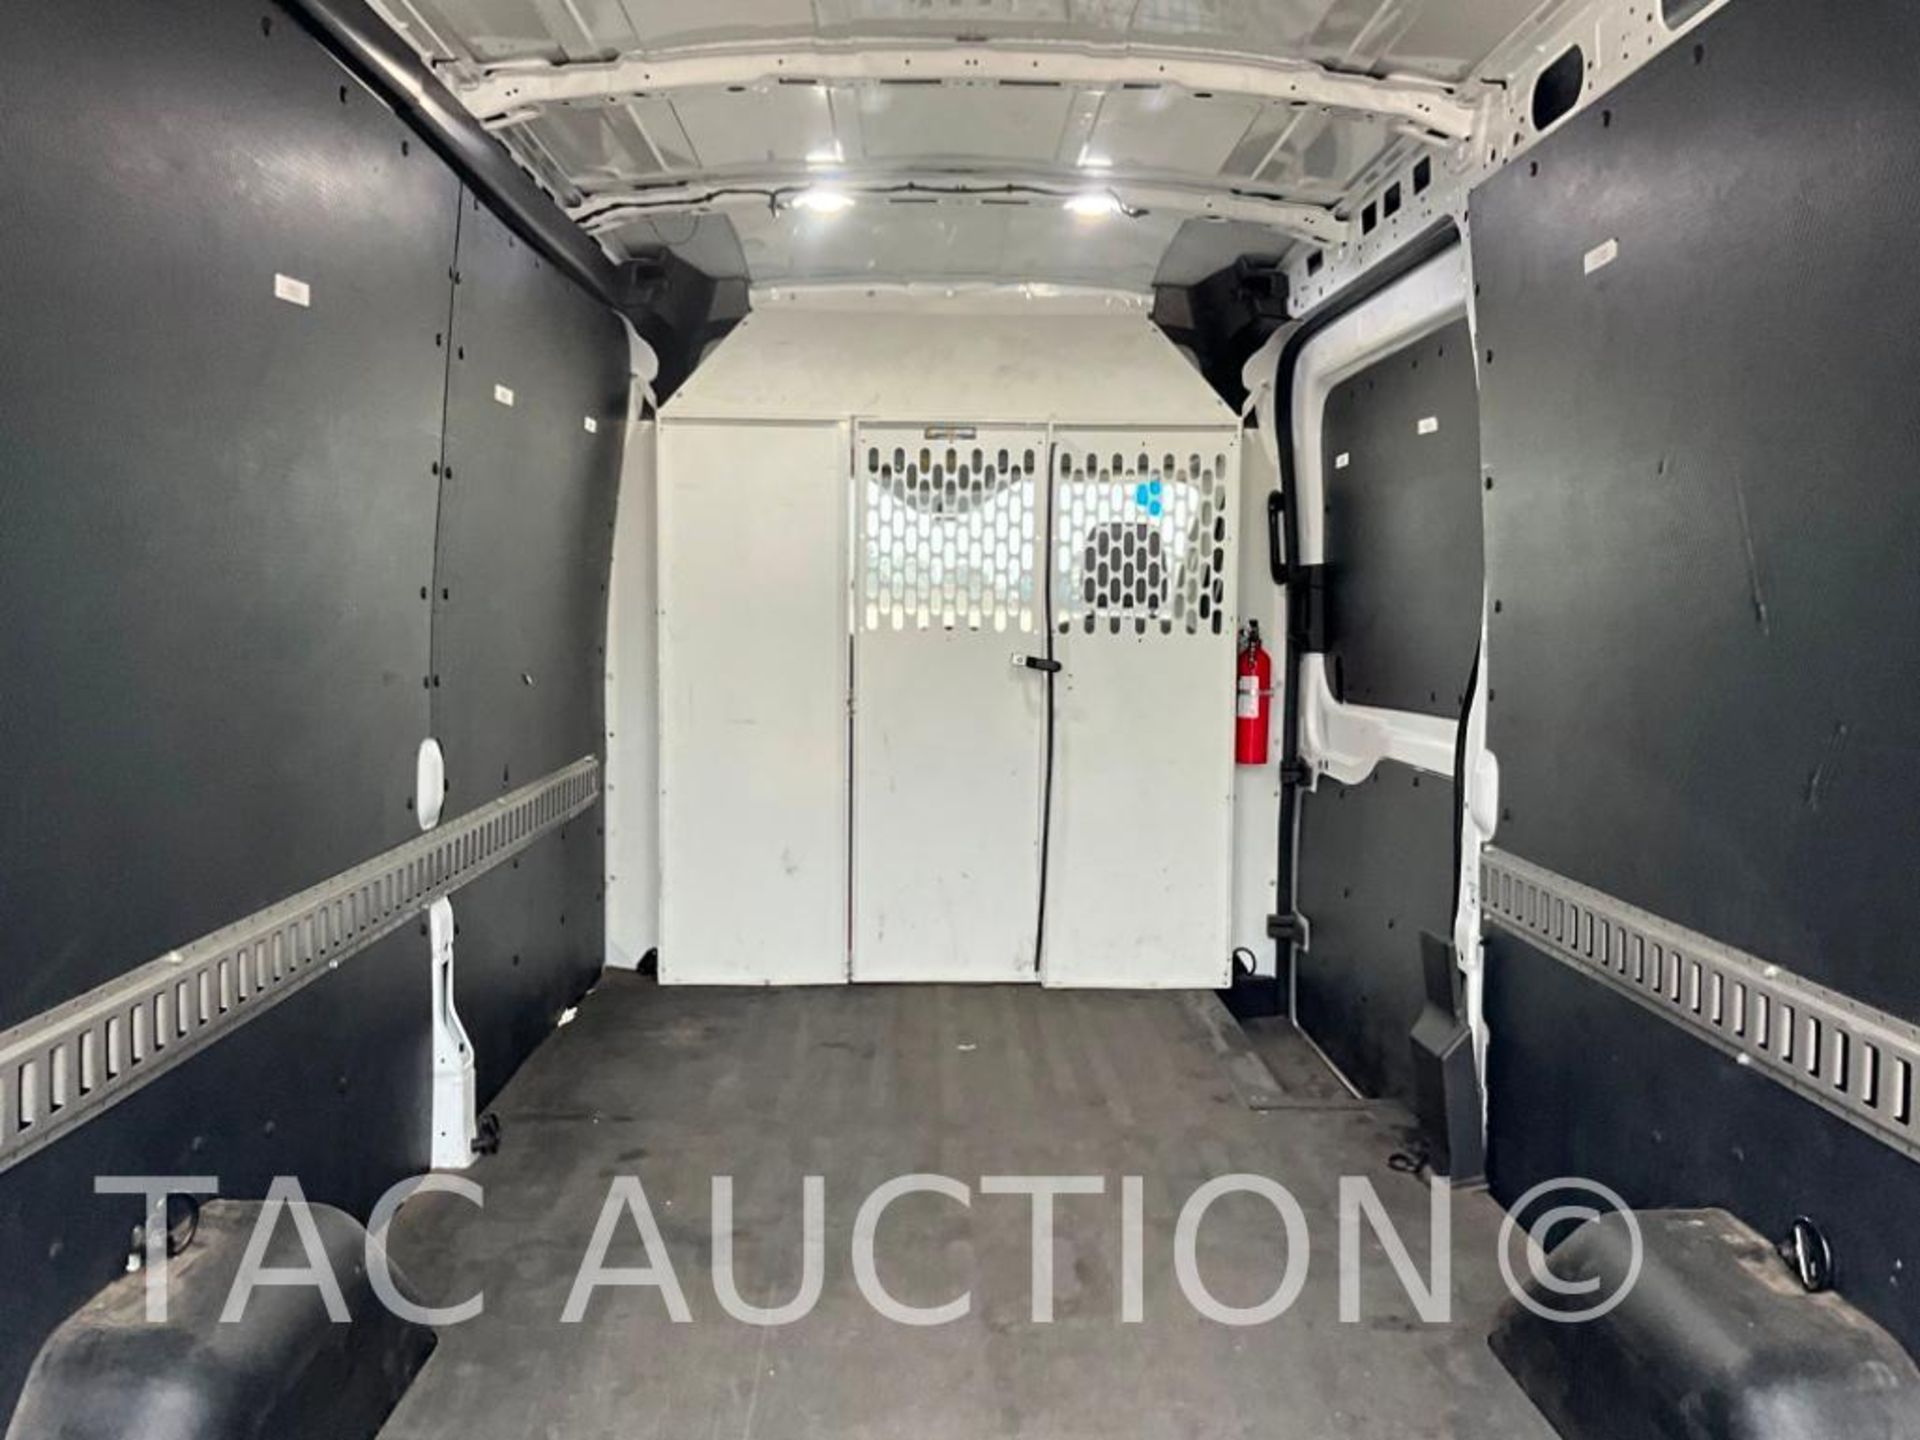 2019 Ford Transit 150 Cargo Van - Image 42 of 50